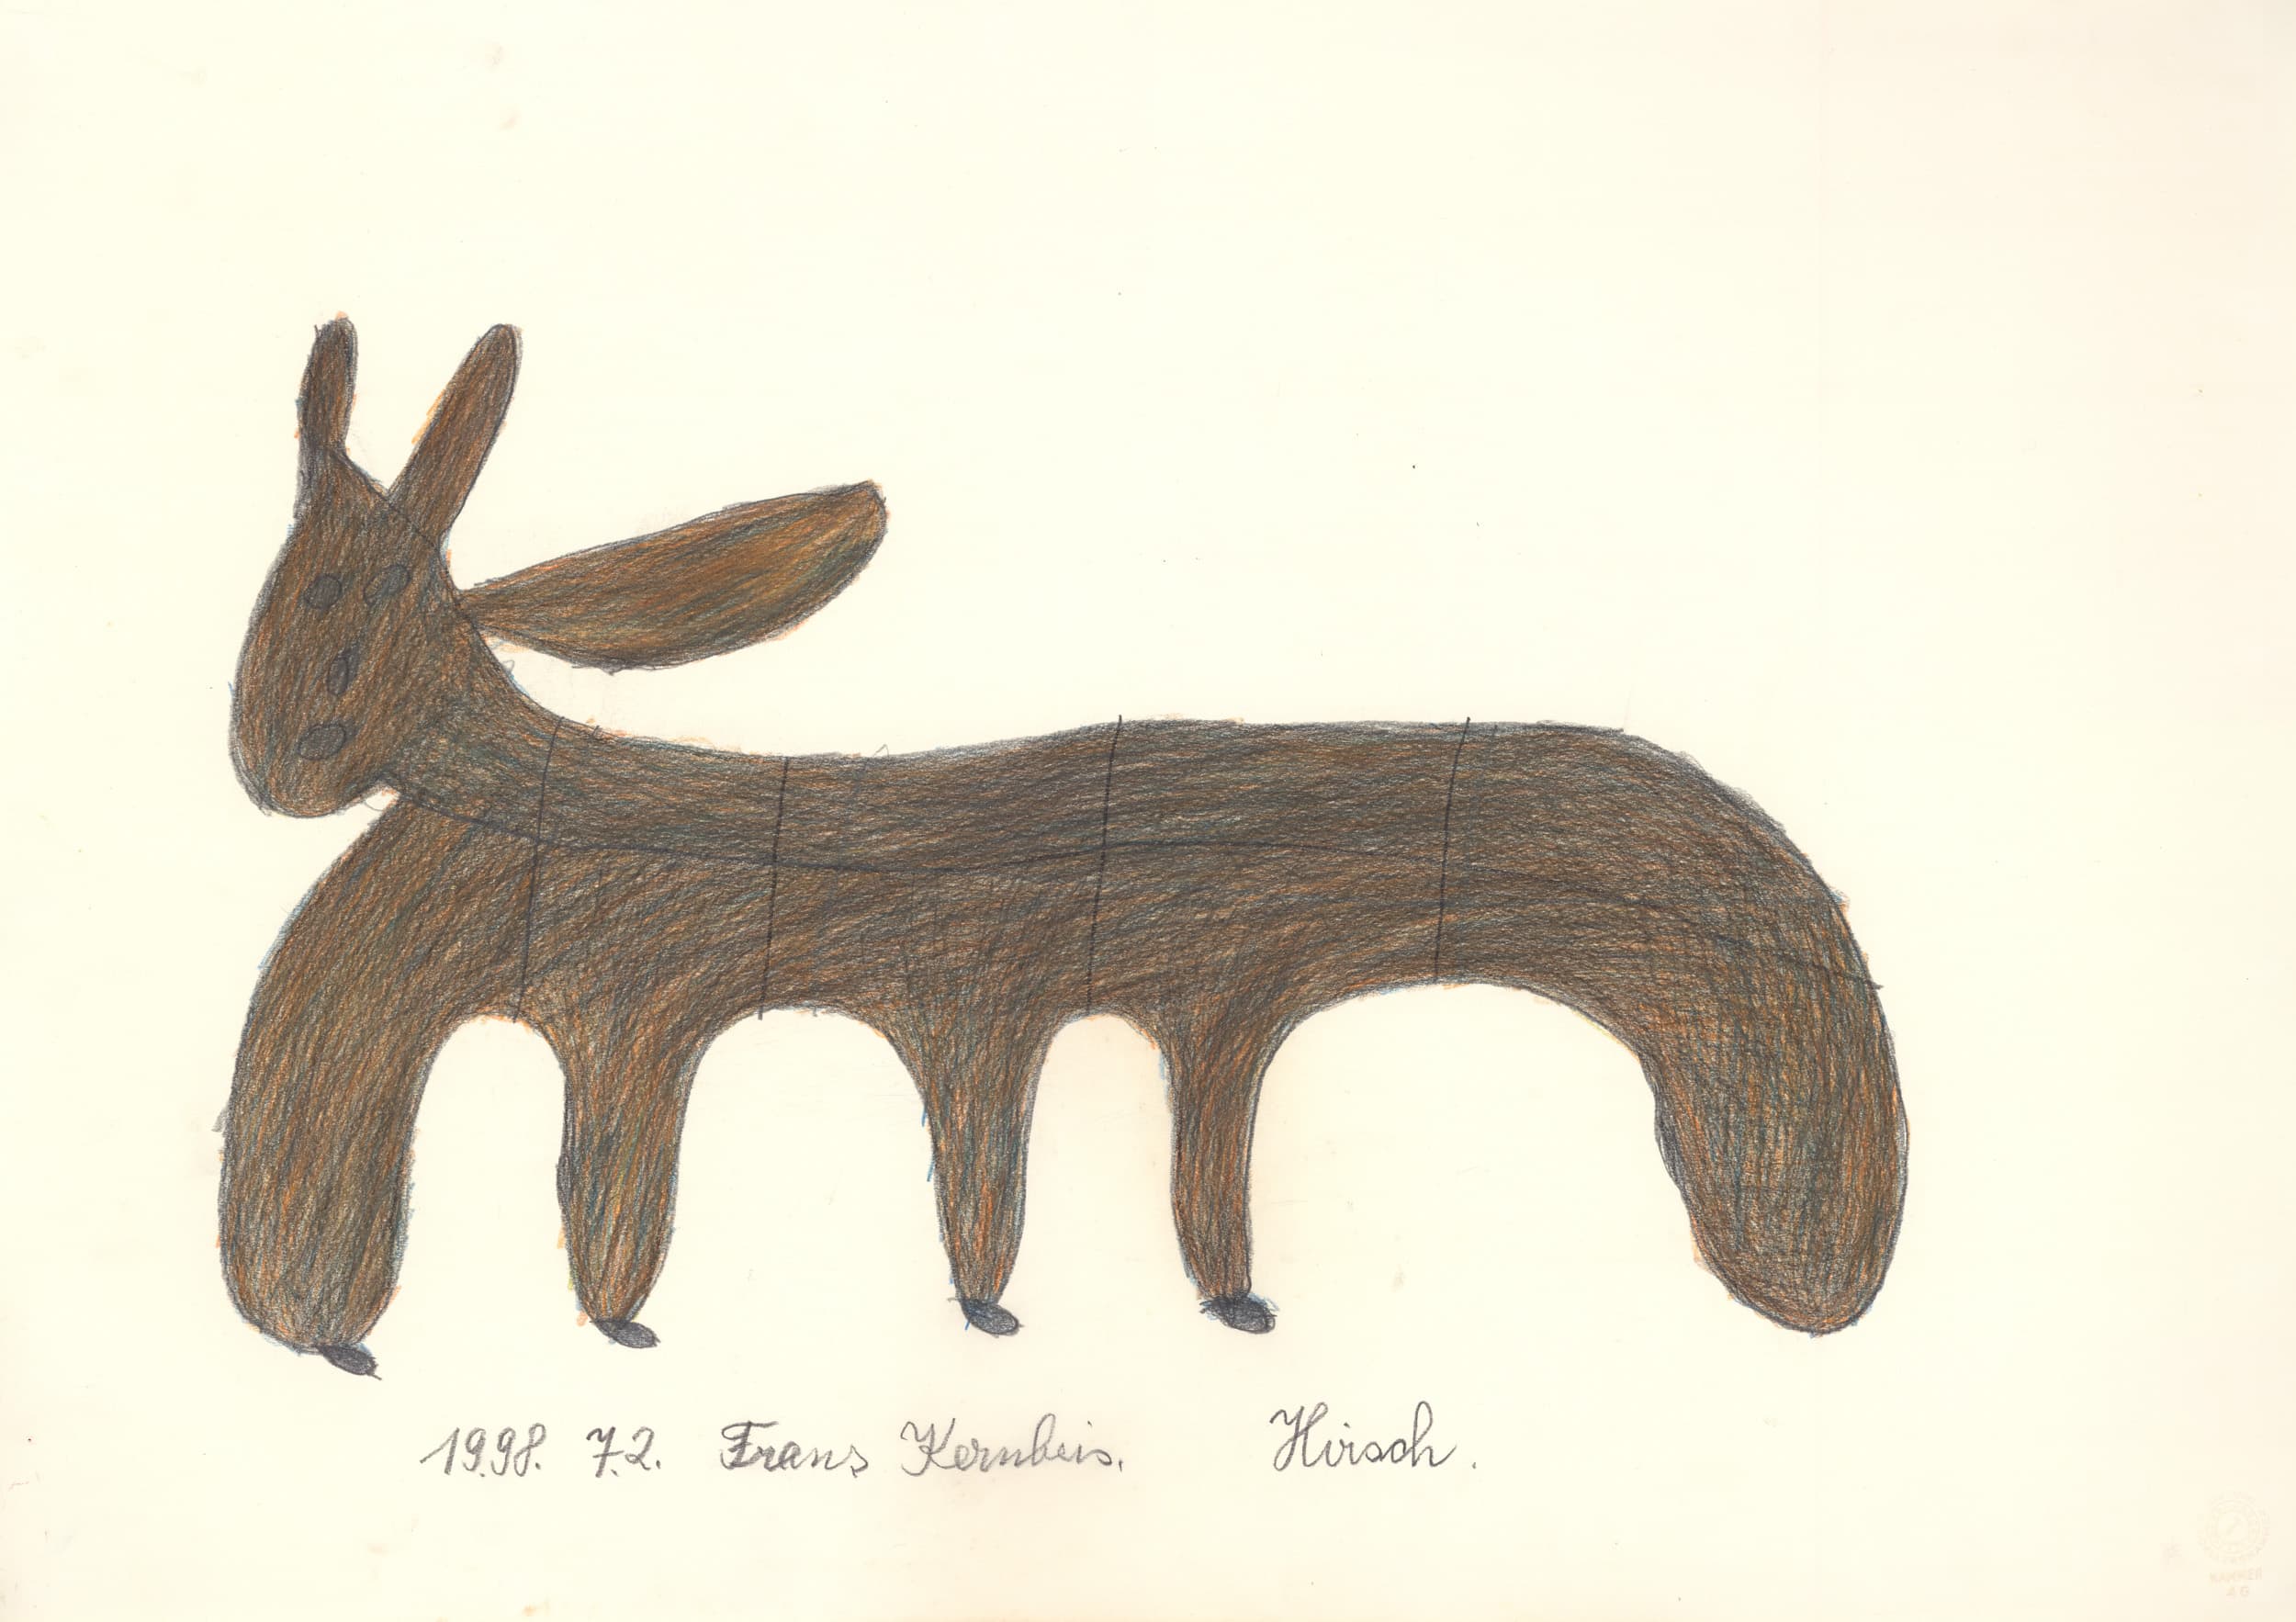 kernbeis franz - Hirsch. / Deer